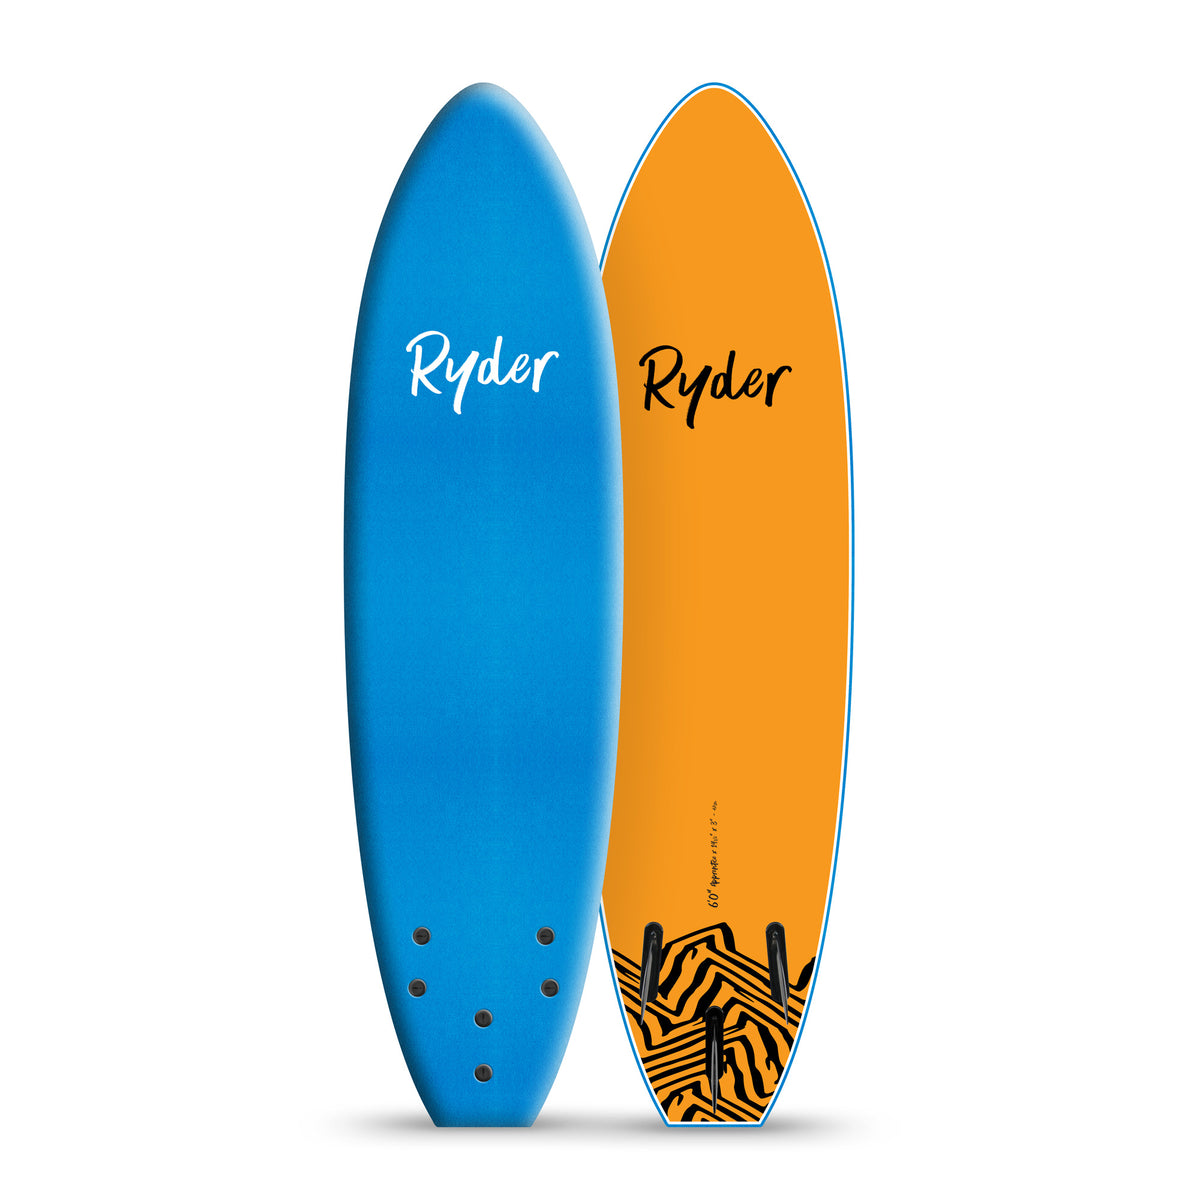 Ryder Apprentice 6ft Soft Surfboard